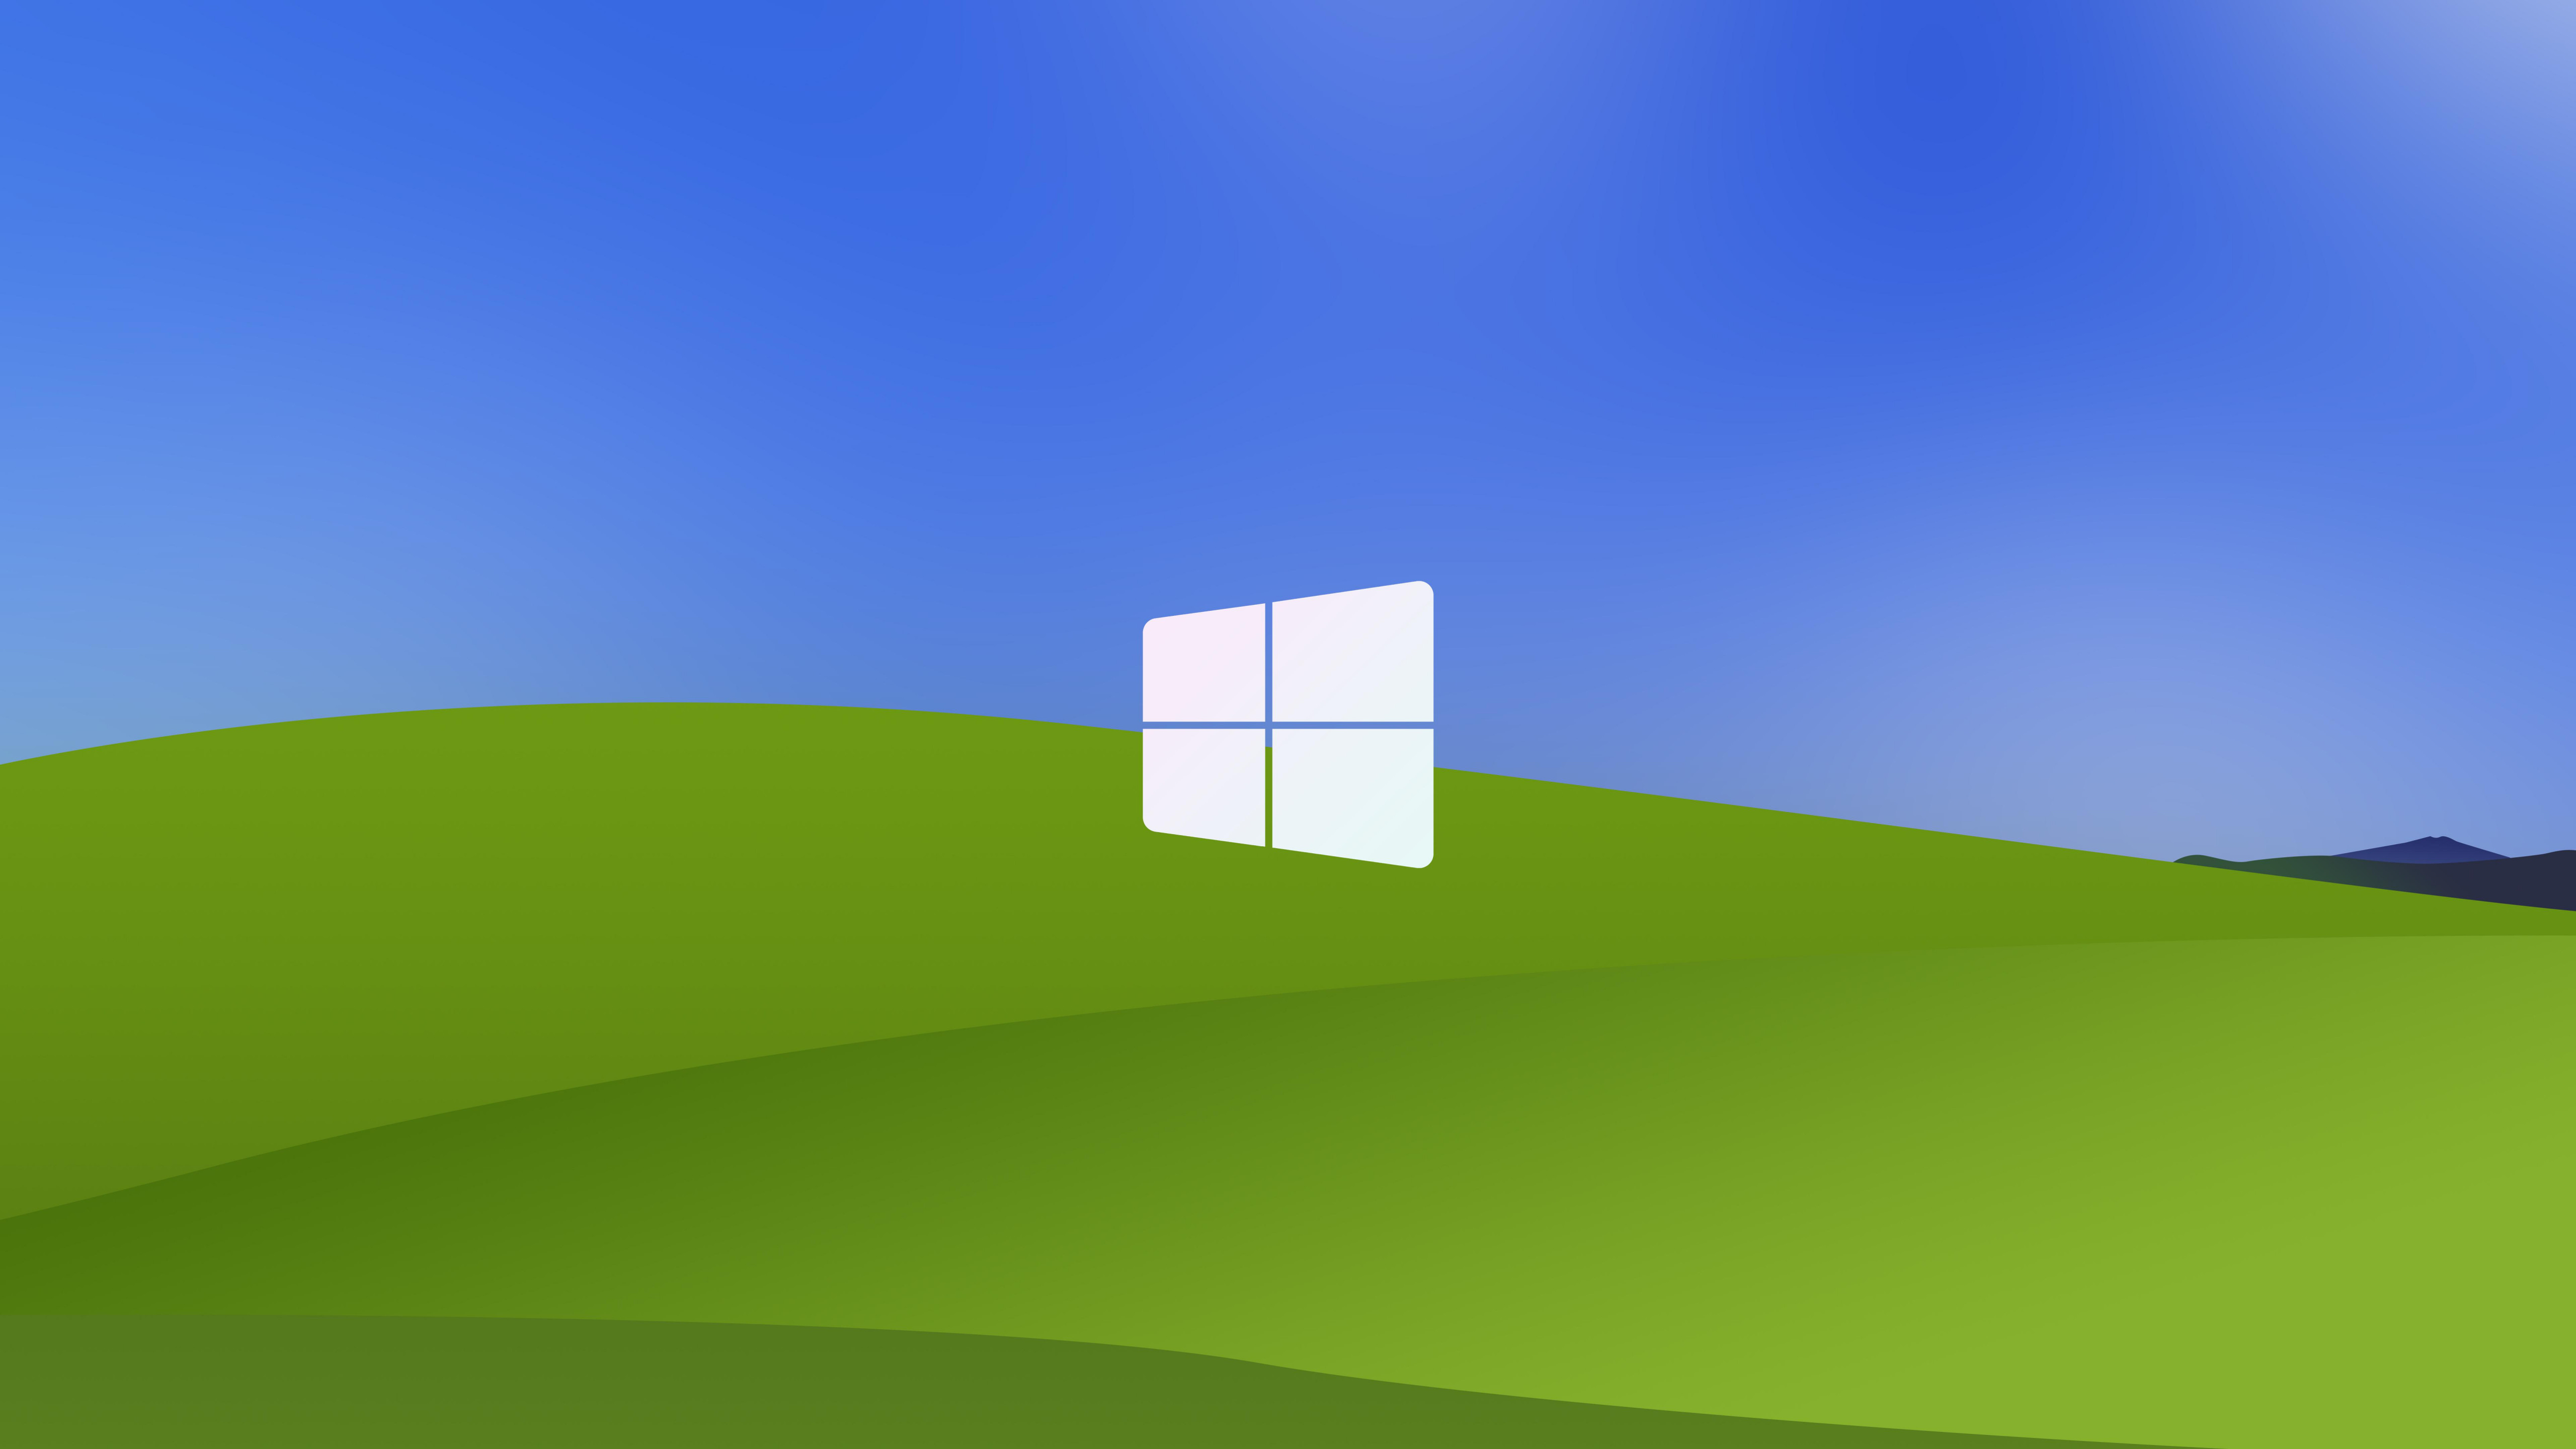 Hình nền Windows XP vẫn là một trong những bộ sưu tập ảnh đẹp nhất hiện nay. Với nhiều chủ đề khác nhau và độ phân giải cao, bạn sẽ có cơ hội trải nghiệm chất lượng hình ảnh tuyệt vời. Hãy cùng khám phá các mẫu hình nền trên Windows XP và tìm cho mình một bức ảnh ưng ý nhất.